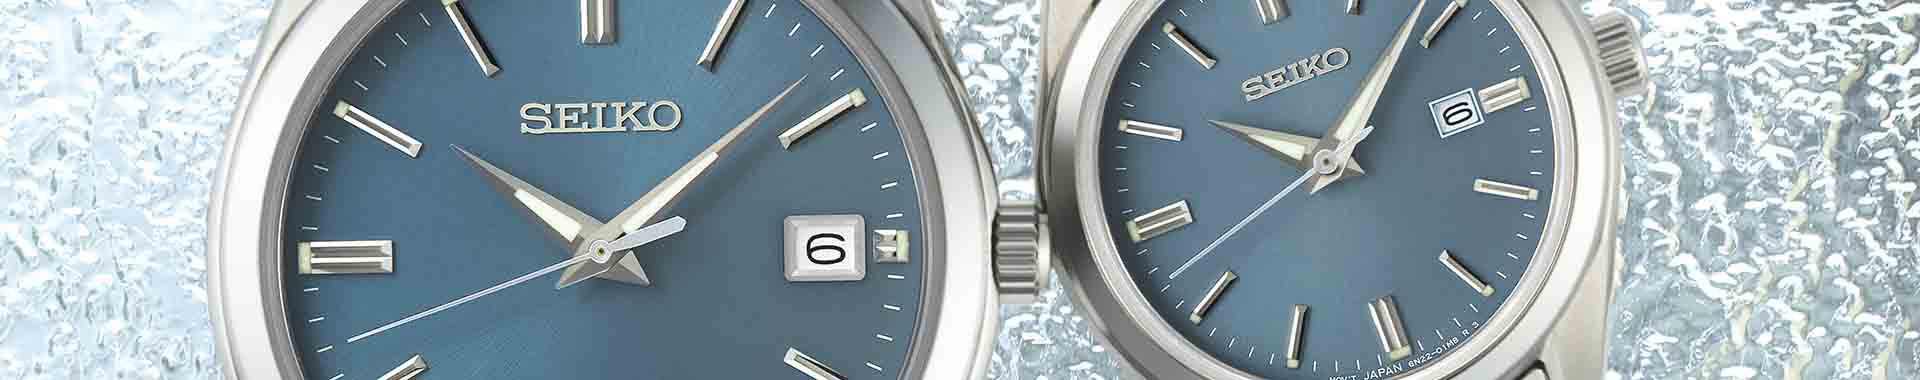 Seiko Classic : orologio uomo classico - Seiko ufficiale